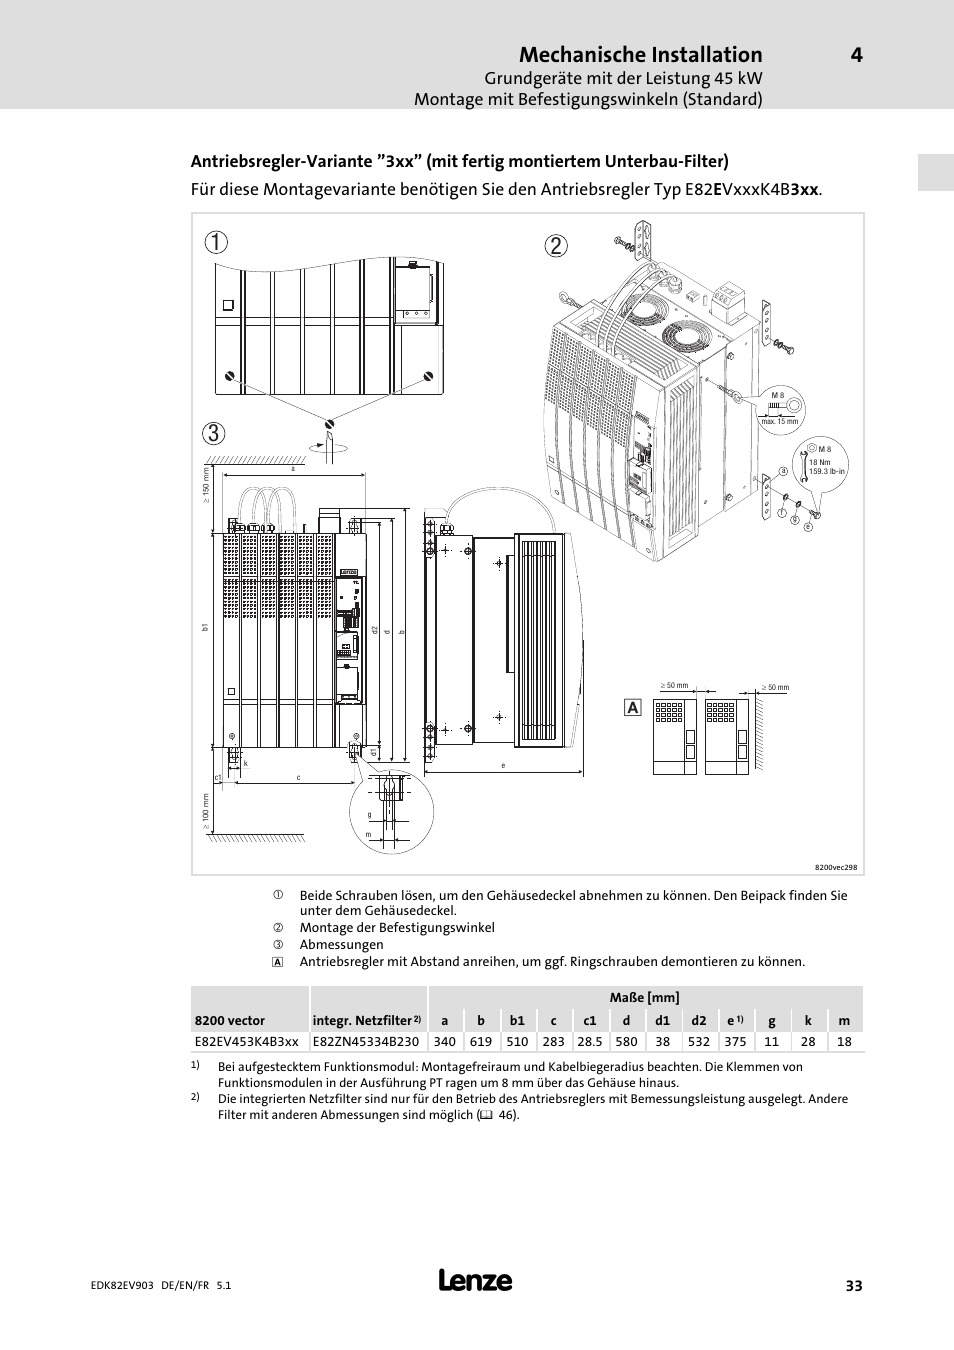 Wiring Diagram PDF: 18 Kw Wiring Diagram